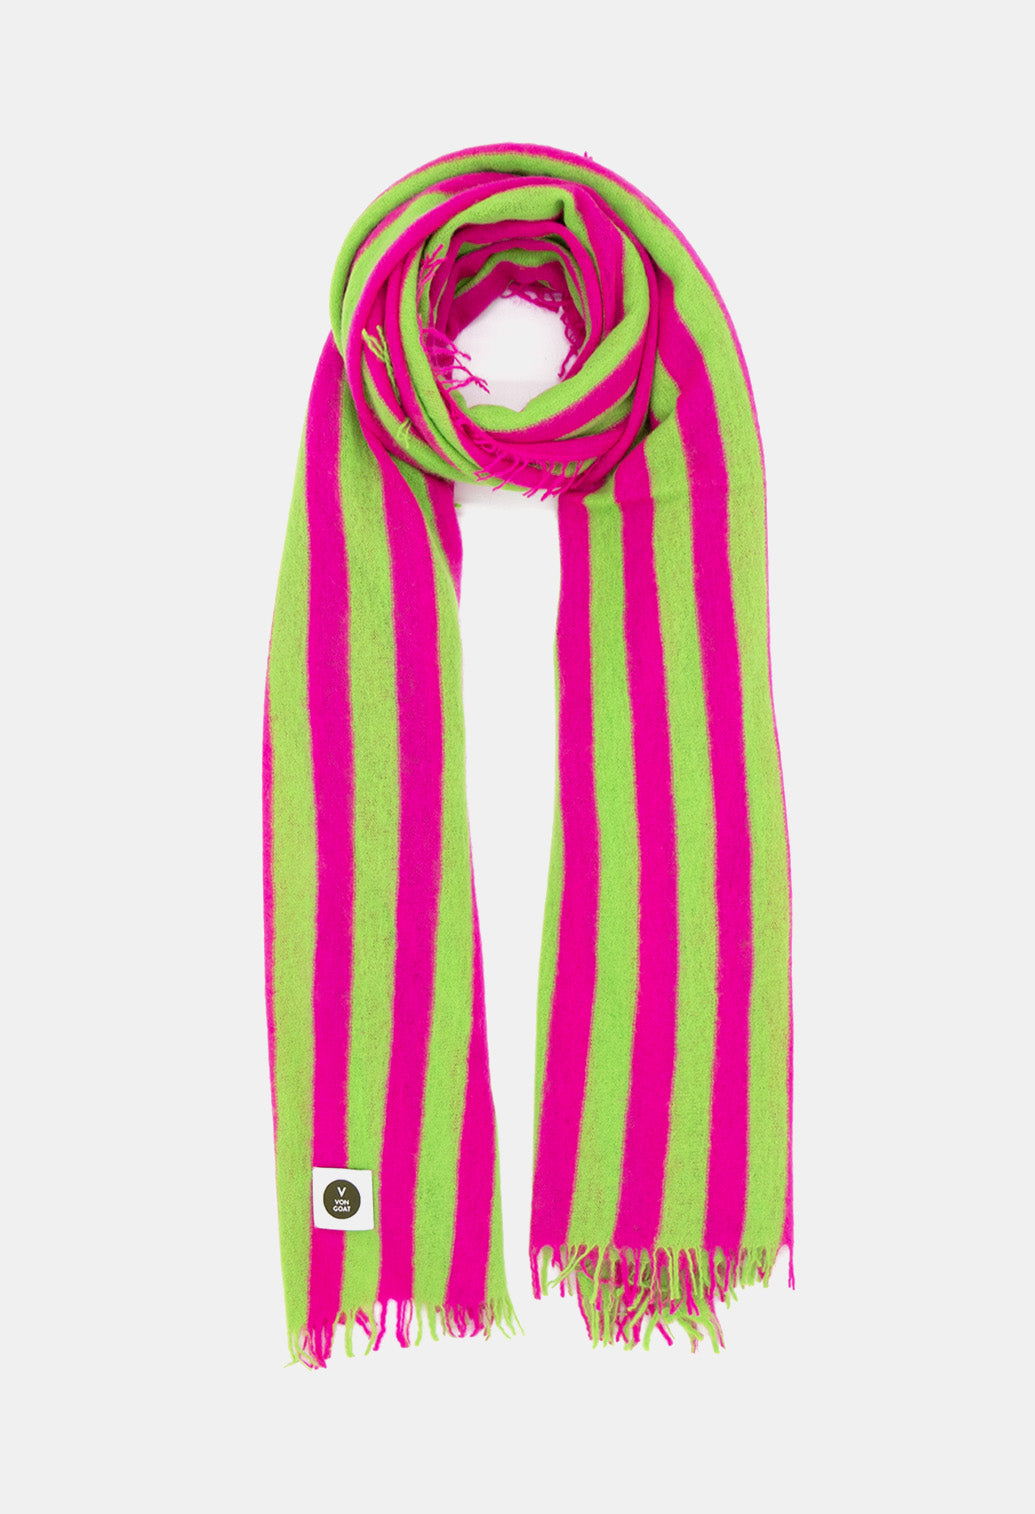 V Von Goat Kaschmir-Schal mit Fransen im Stripes-Stil in den Farben Neon Grün und Neon Pink aus reiner Cashmere-Wolle auf weißem Untergrund.